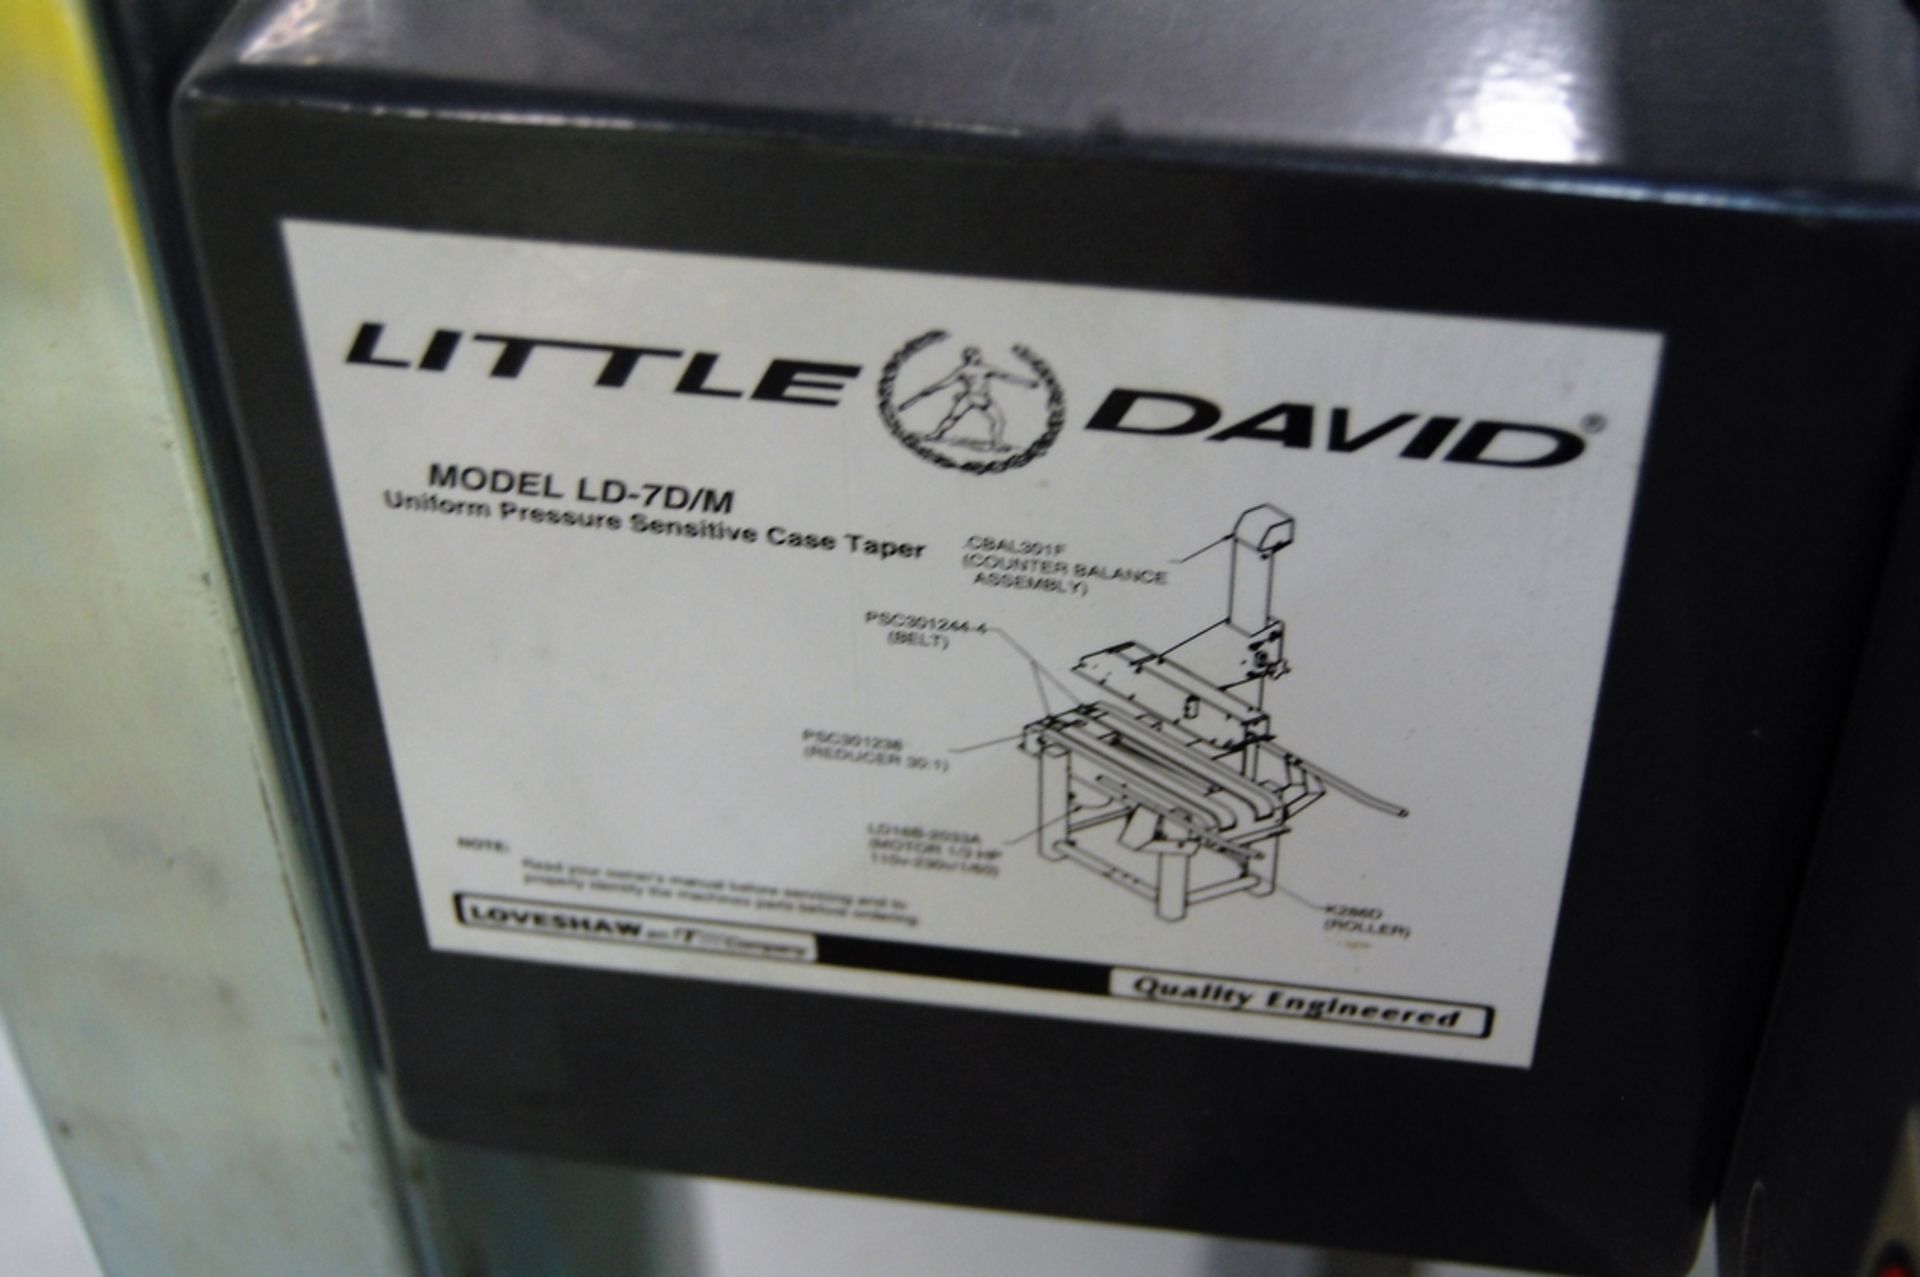 Loveshaw Model Little David LD7/3 Uniform Pressure Sensitive Case Sealer - Image 5 of 8